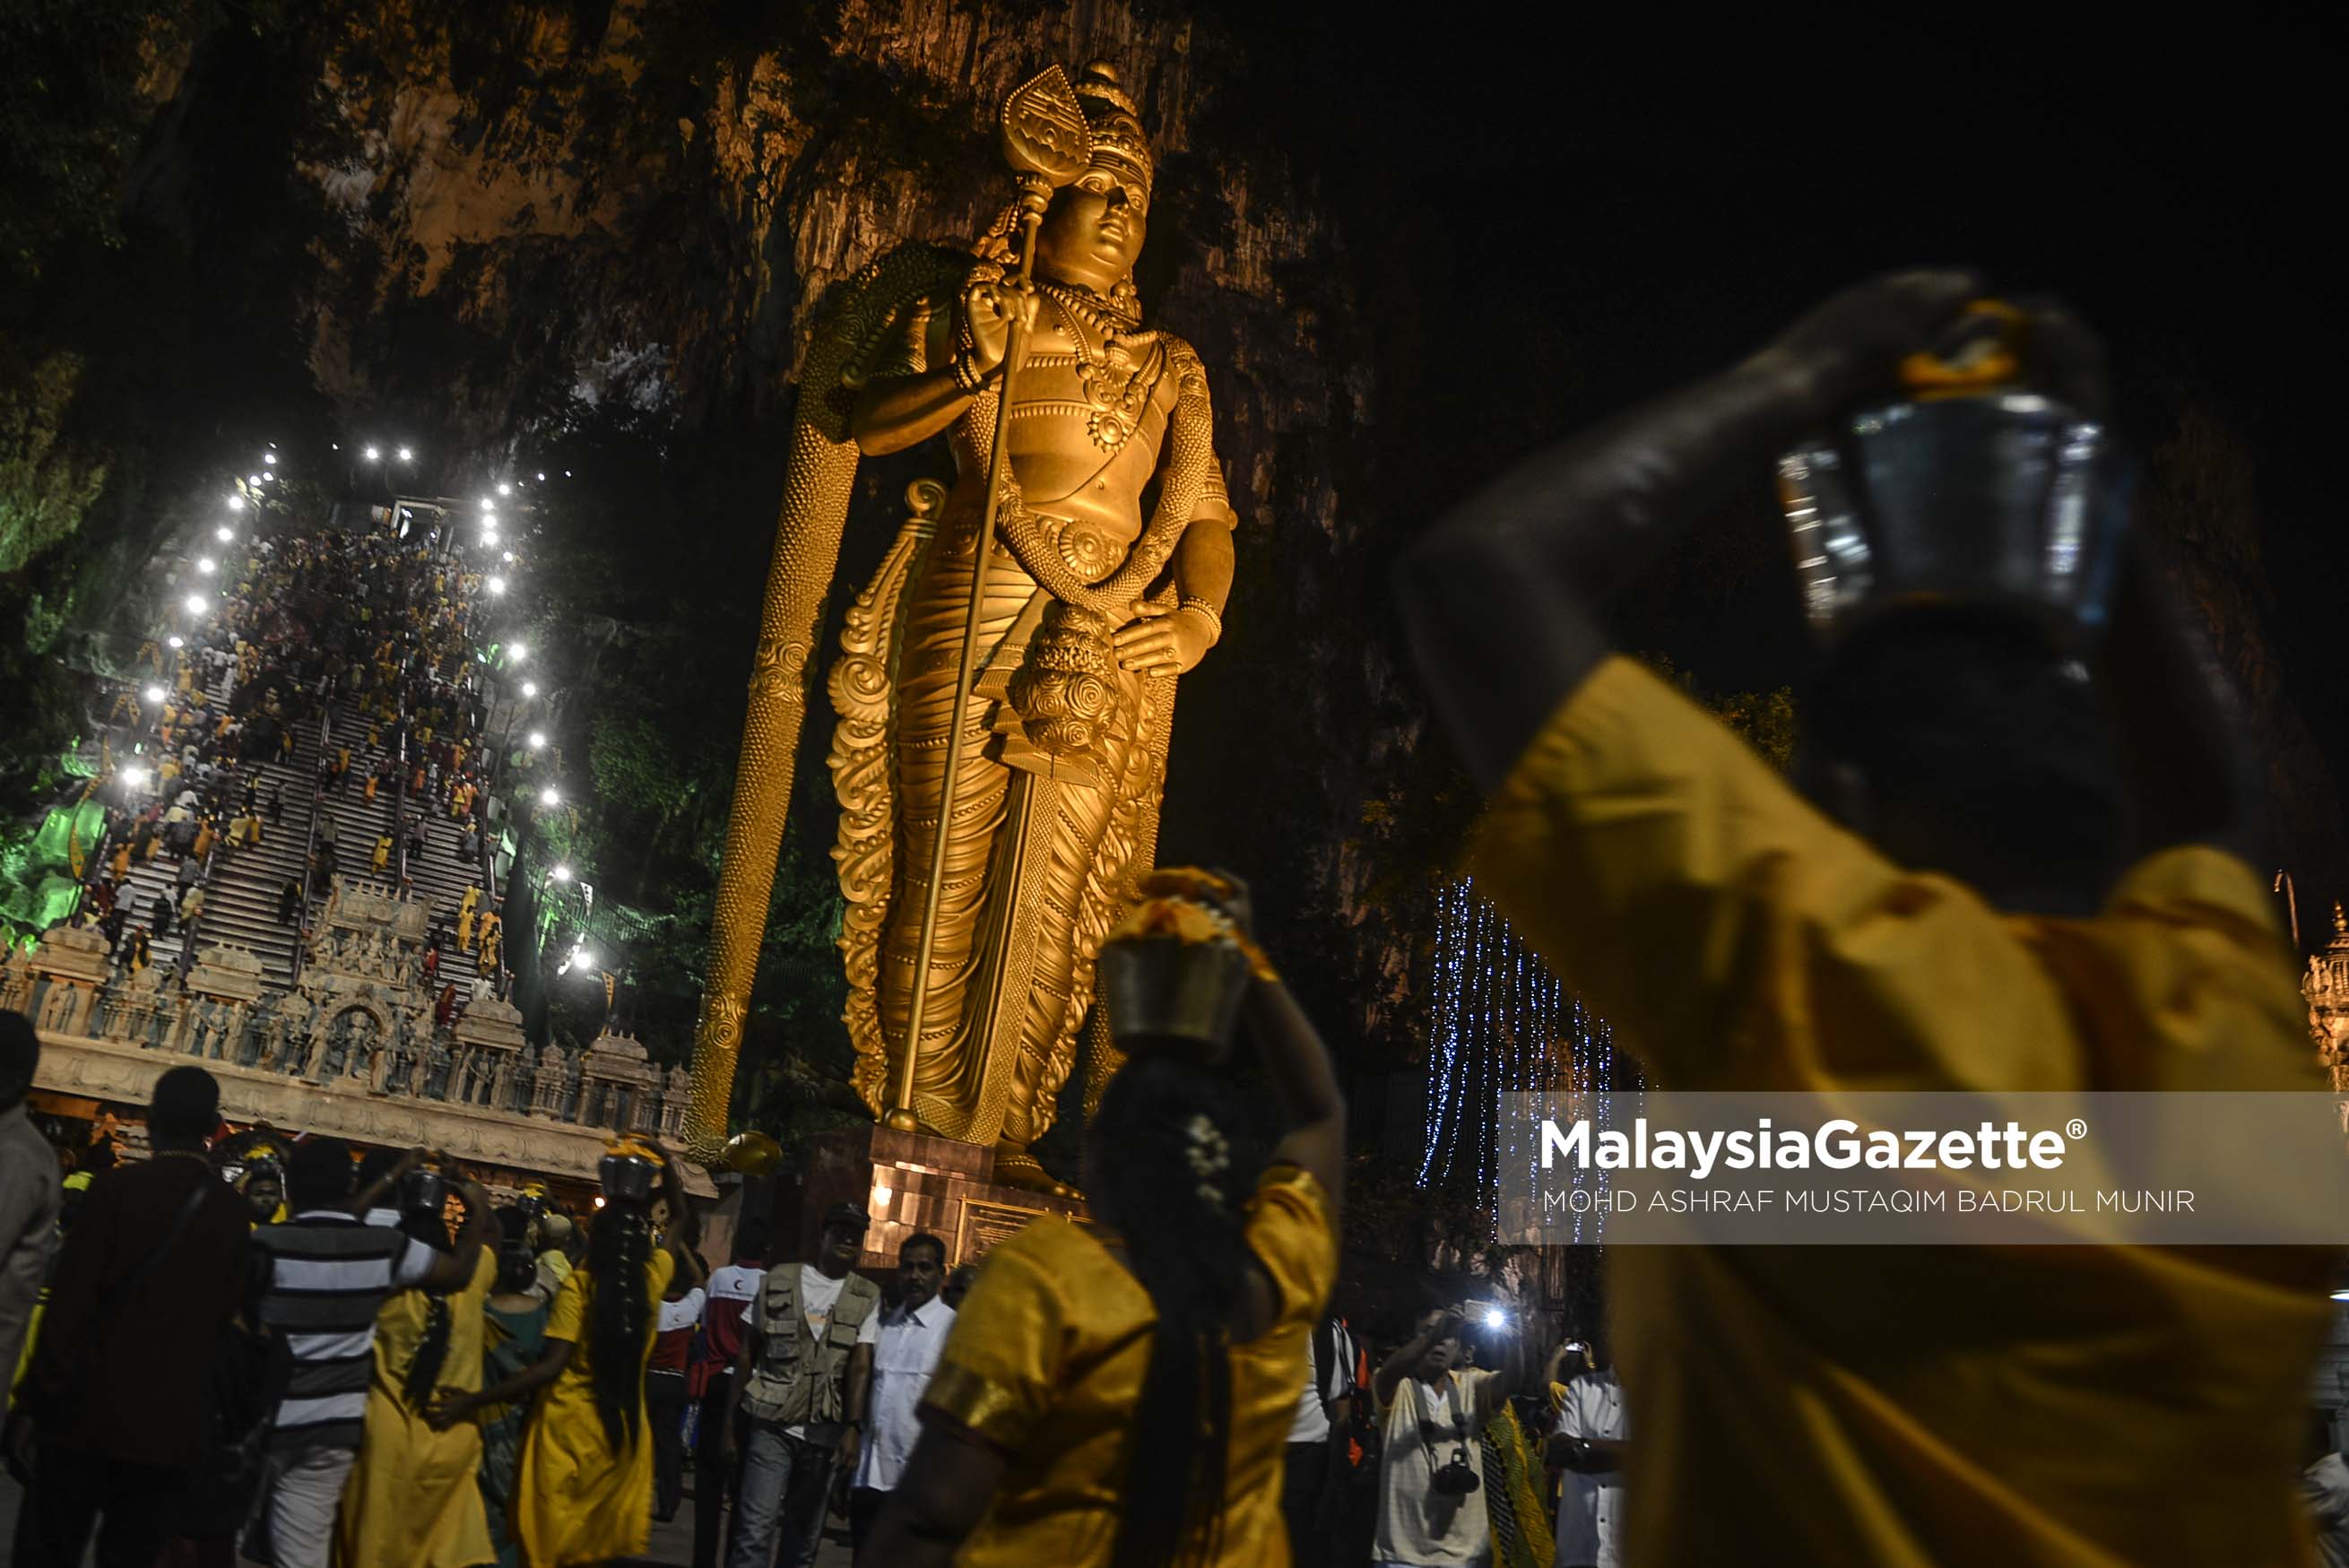 Beberapa penganut agama Hindu menuju ke Kuil Sri Murugan dalam menunaikan nazar ketika tinjauan lensa Malaysia Gazette sempena sambutan Thaipusam 2017 di Batu Caves, Selangor. foto ASHRAF MUSTAQIM BADRUL MUNIR, 08 FEBRUARI 2017.